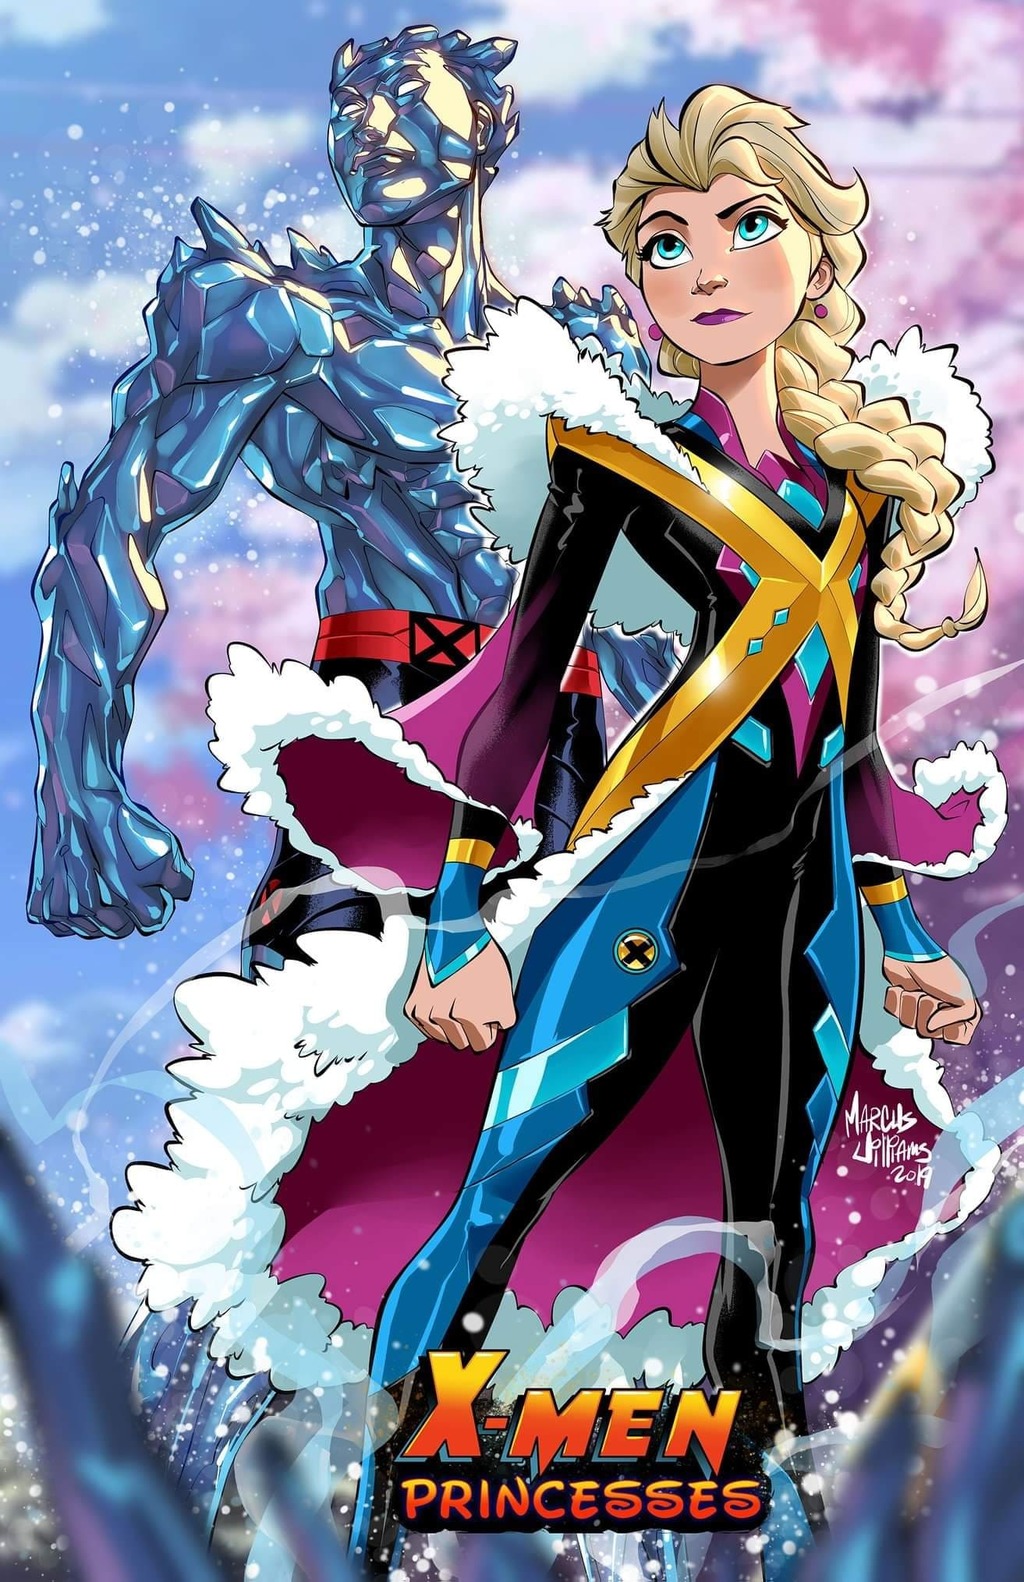 El artista, Marcus Williams, junto a Iceman con Elsa, en un 'épico' crossover (ESPECIAL) 